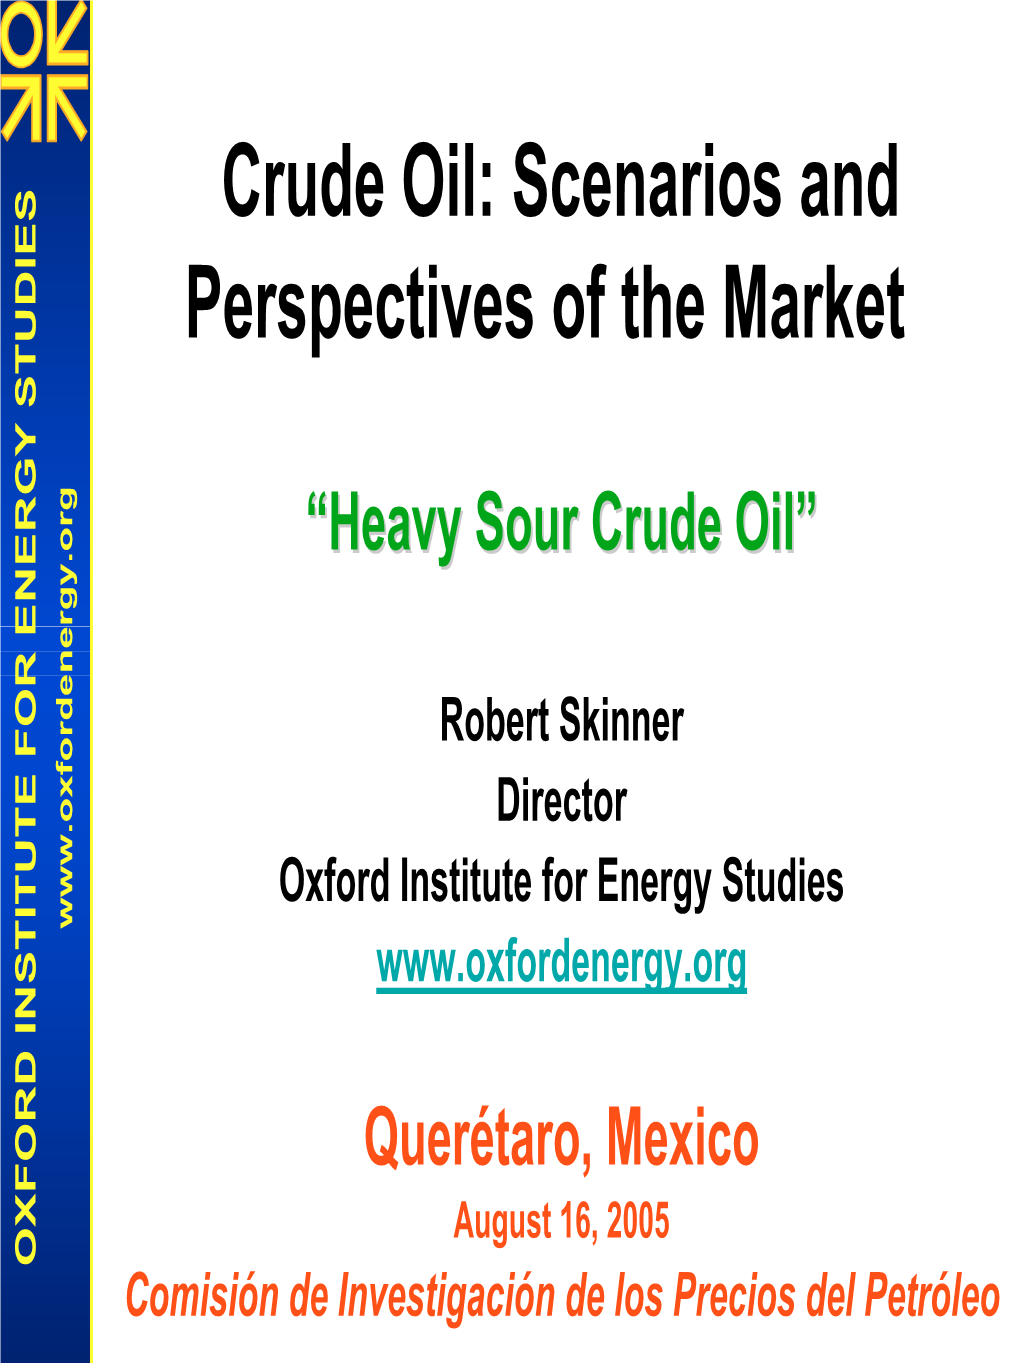 Crude Oil: Scenarios